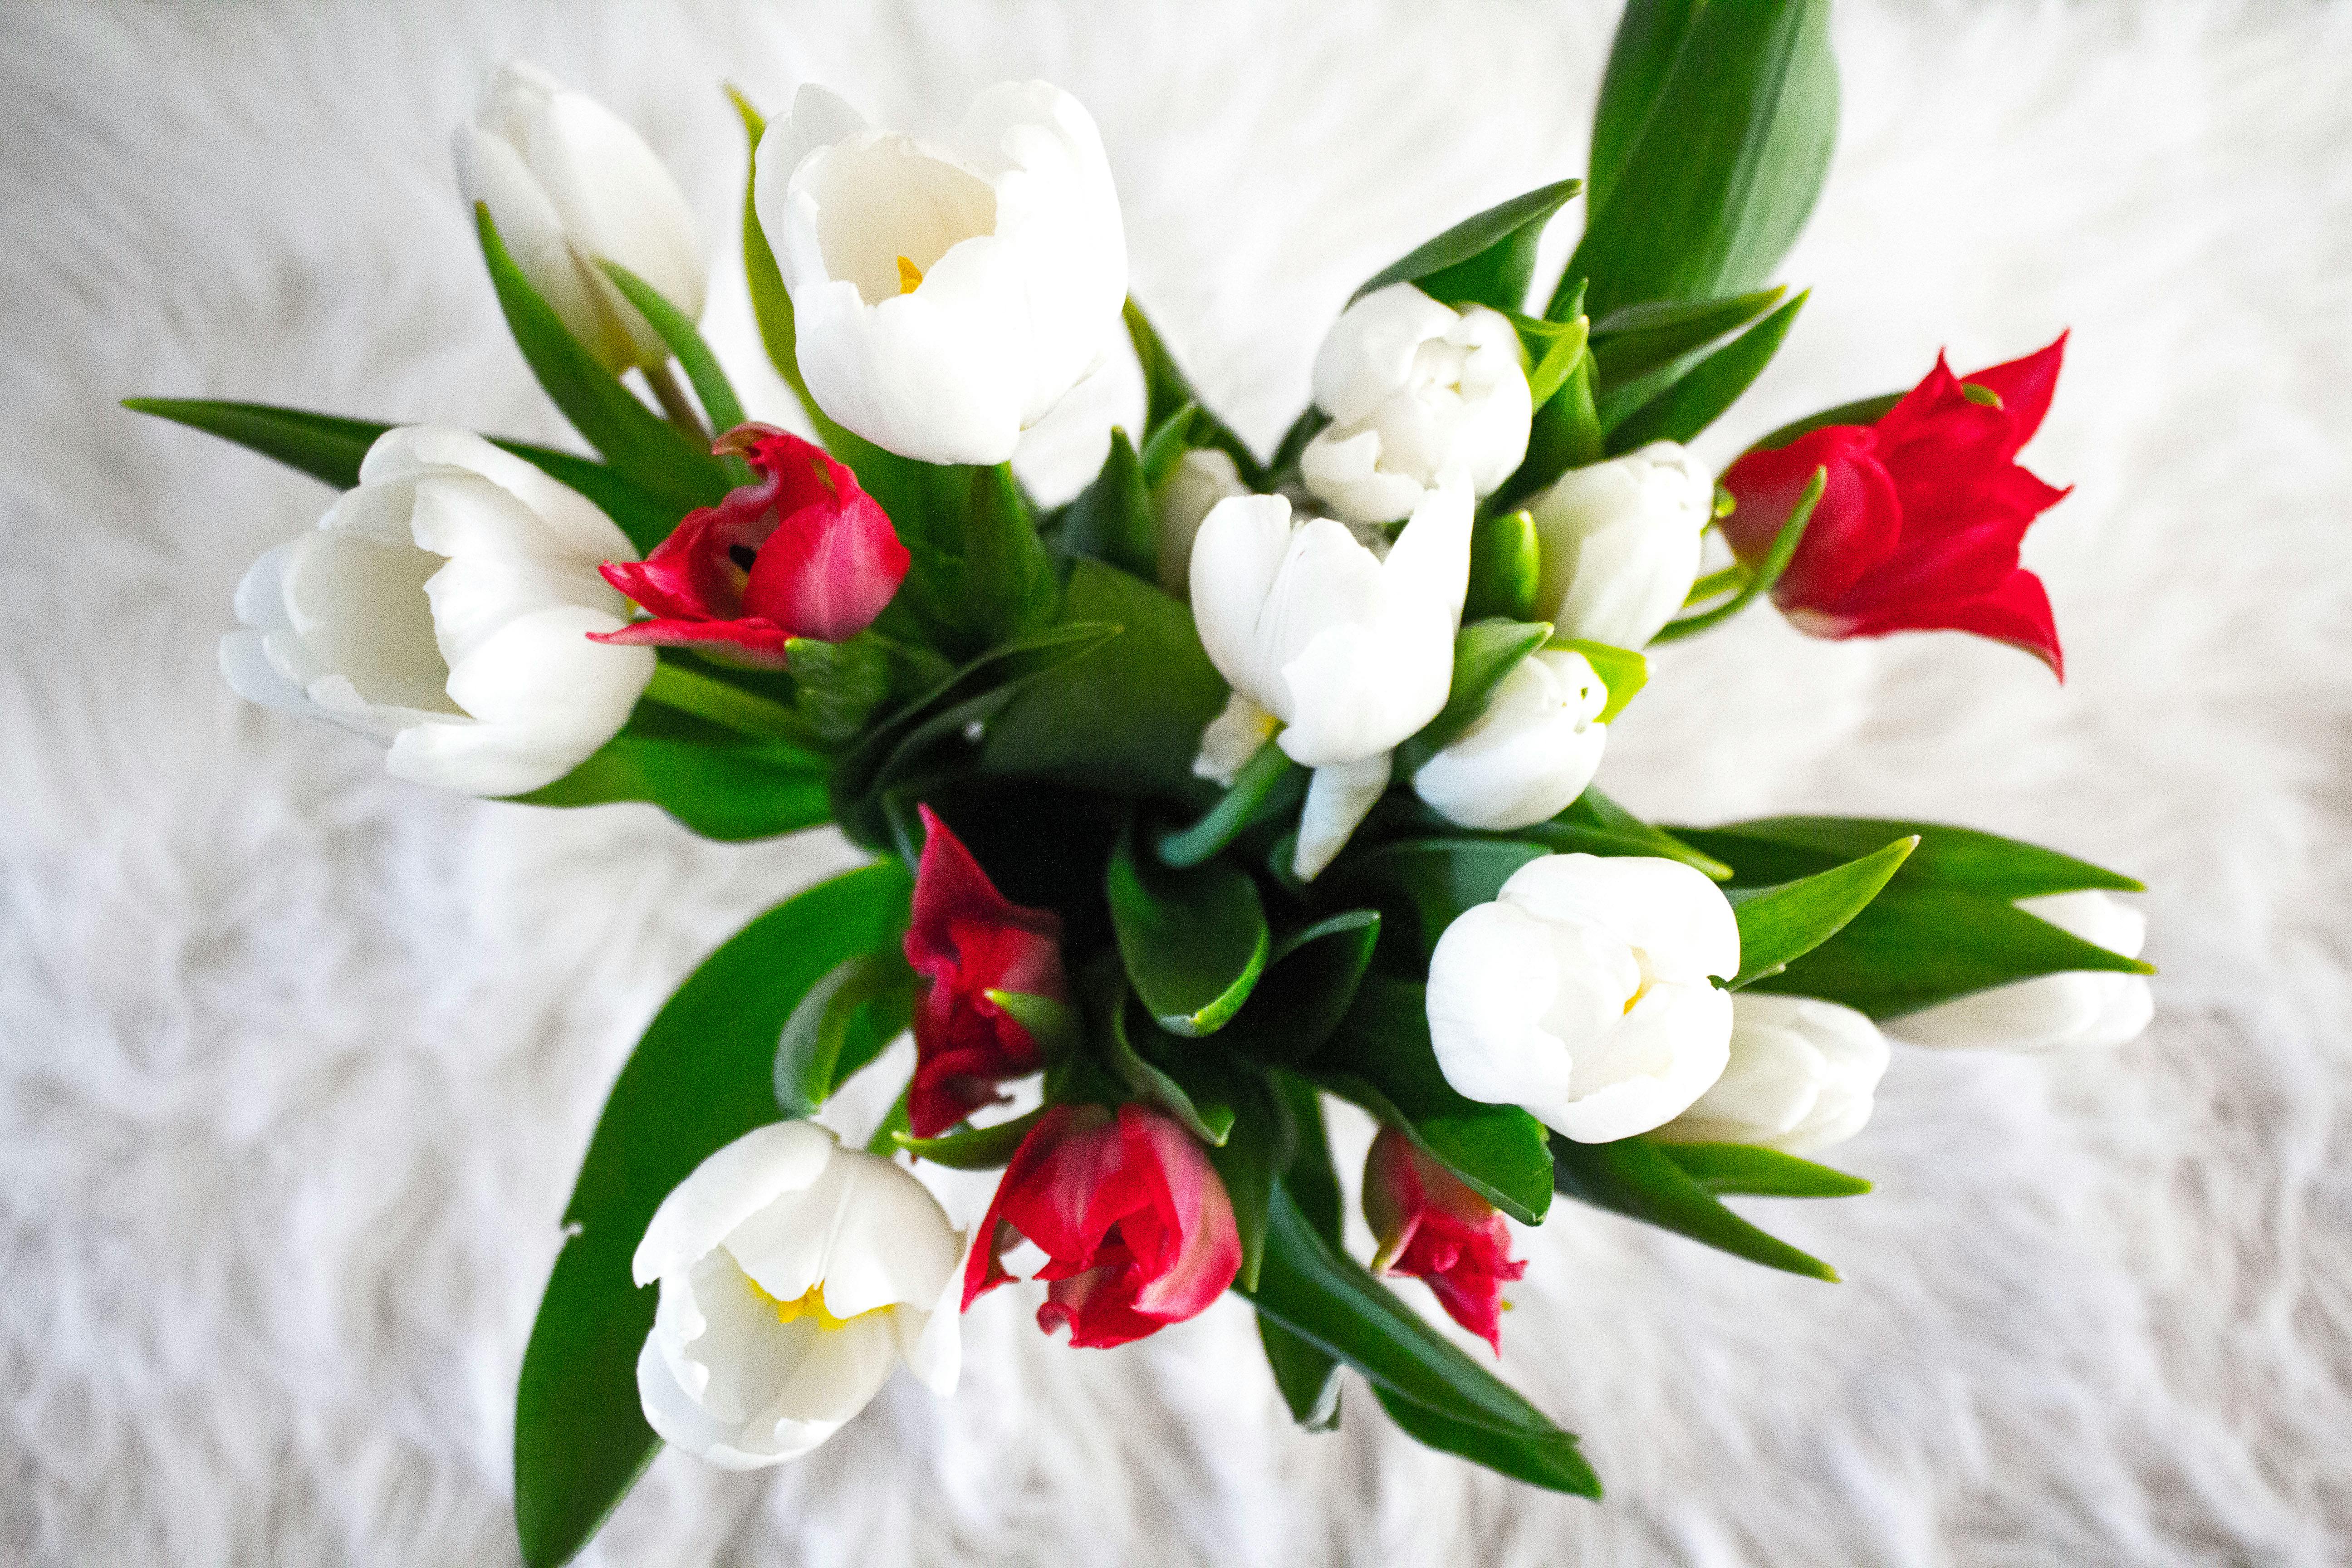 Terbaru 28+ Bunga Lili Gambar - Koleksi Bunga HD